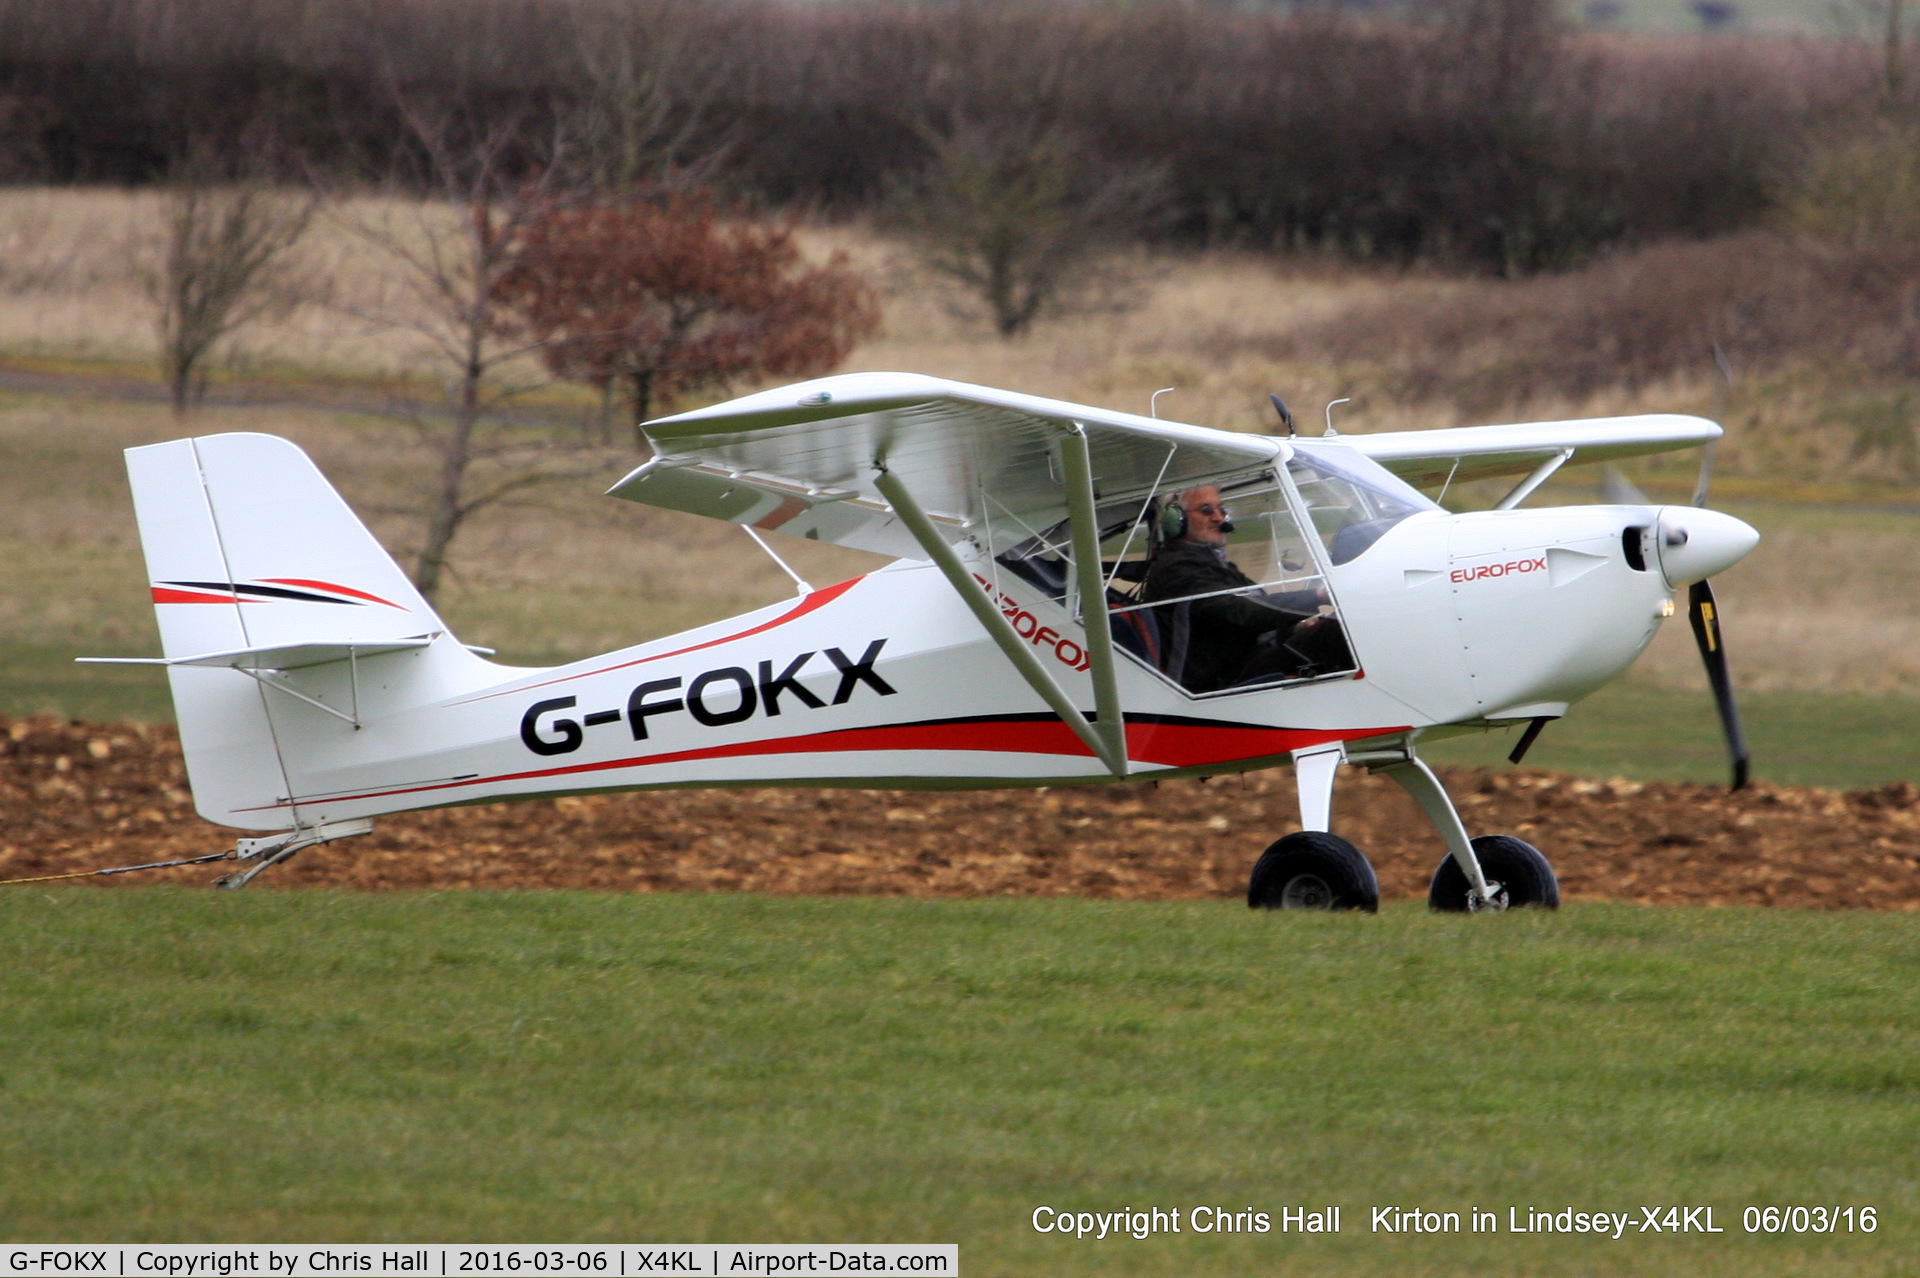 G-FOKX, 2015 Aeropro Eurofox 912(S) C/N LAA 376-15272, at Kirton in Lyndsey